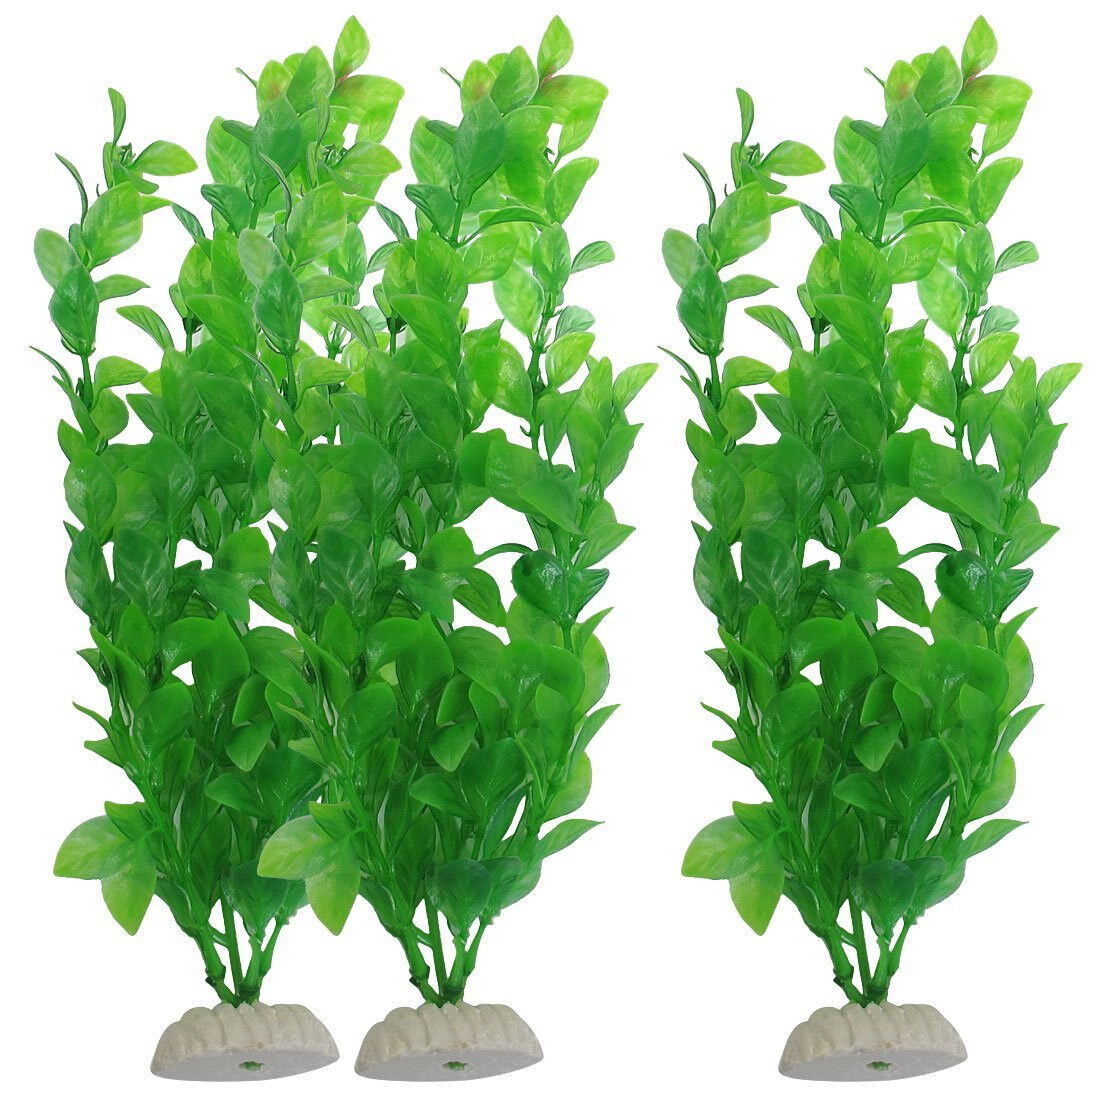 3pcs Artificial Aquarium Fish Tank Green Plastic Plant Decoration 10-Inch Tall